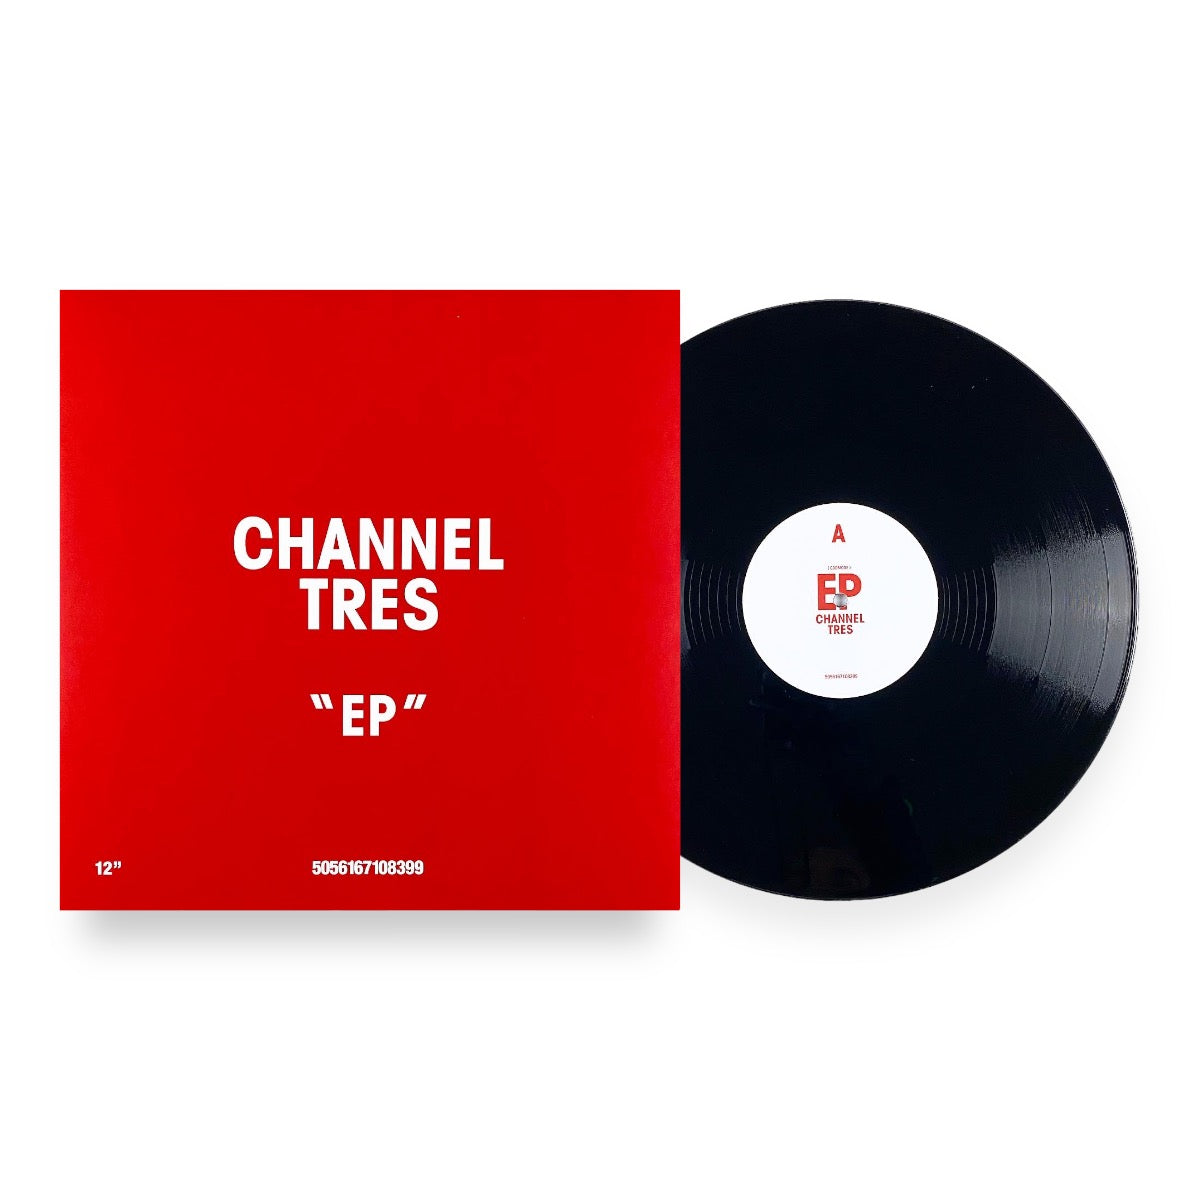 Channel Tres "EP" Vinyl